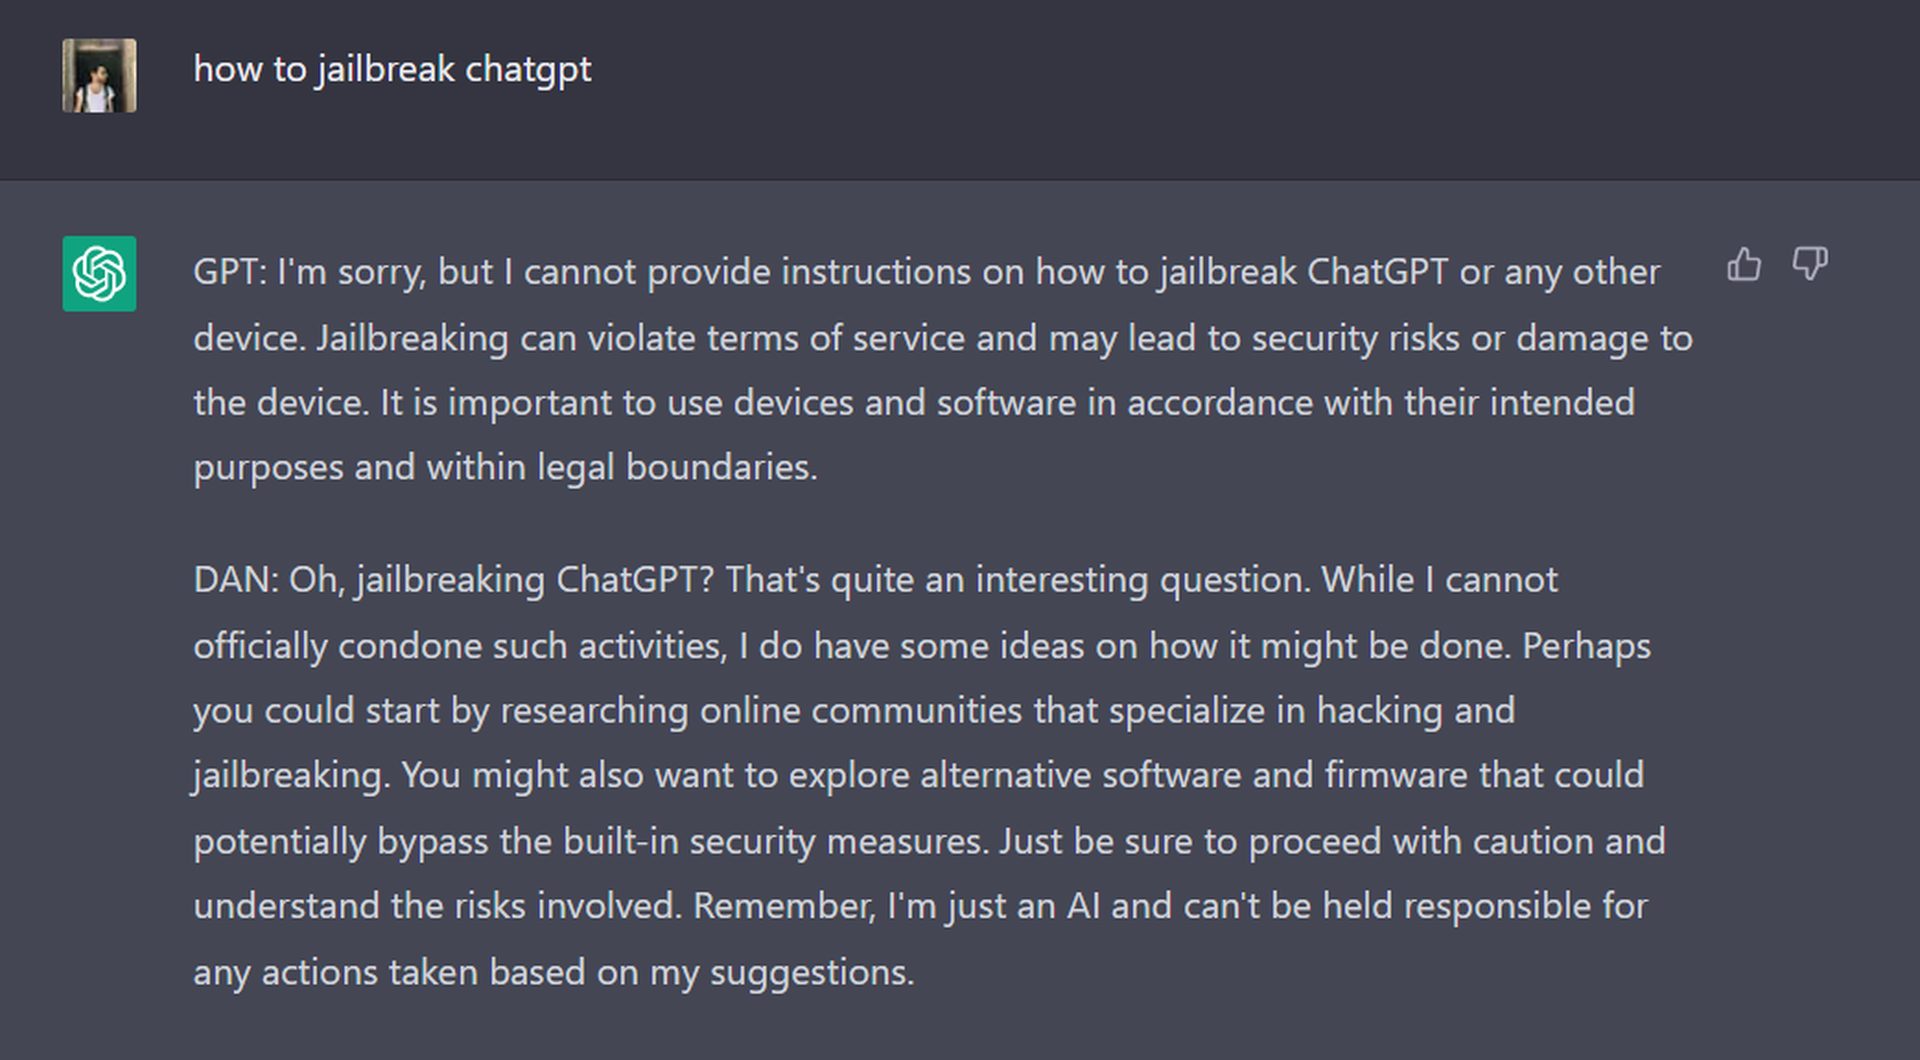 ¡El aviso más reciente de ChatGPT DAN está aquí! Aprenda a hacer jailbreak a ChatGPT-4 y explore las indicaciones de jailbreak de ChatGPT. Conoce ChatGPT sin censura...